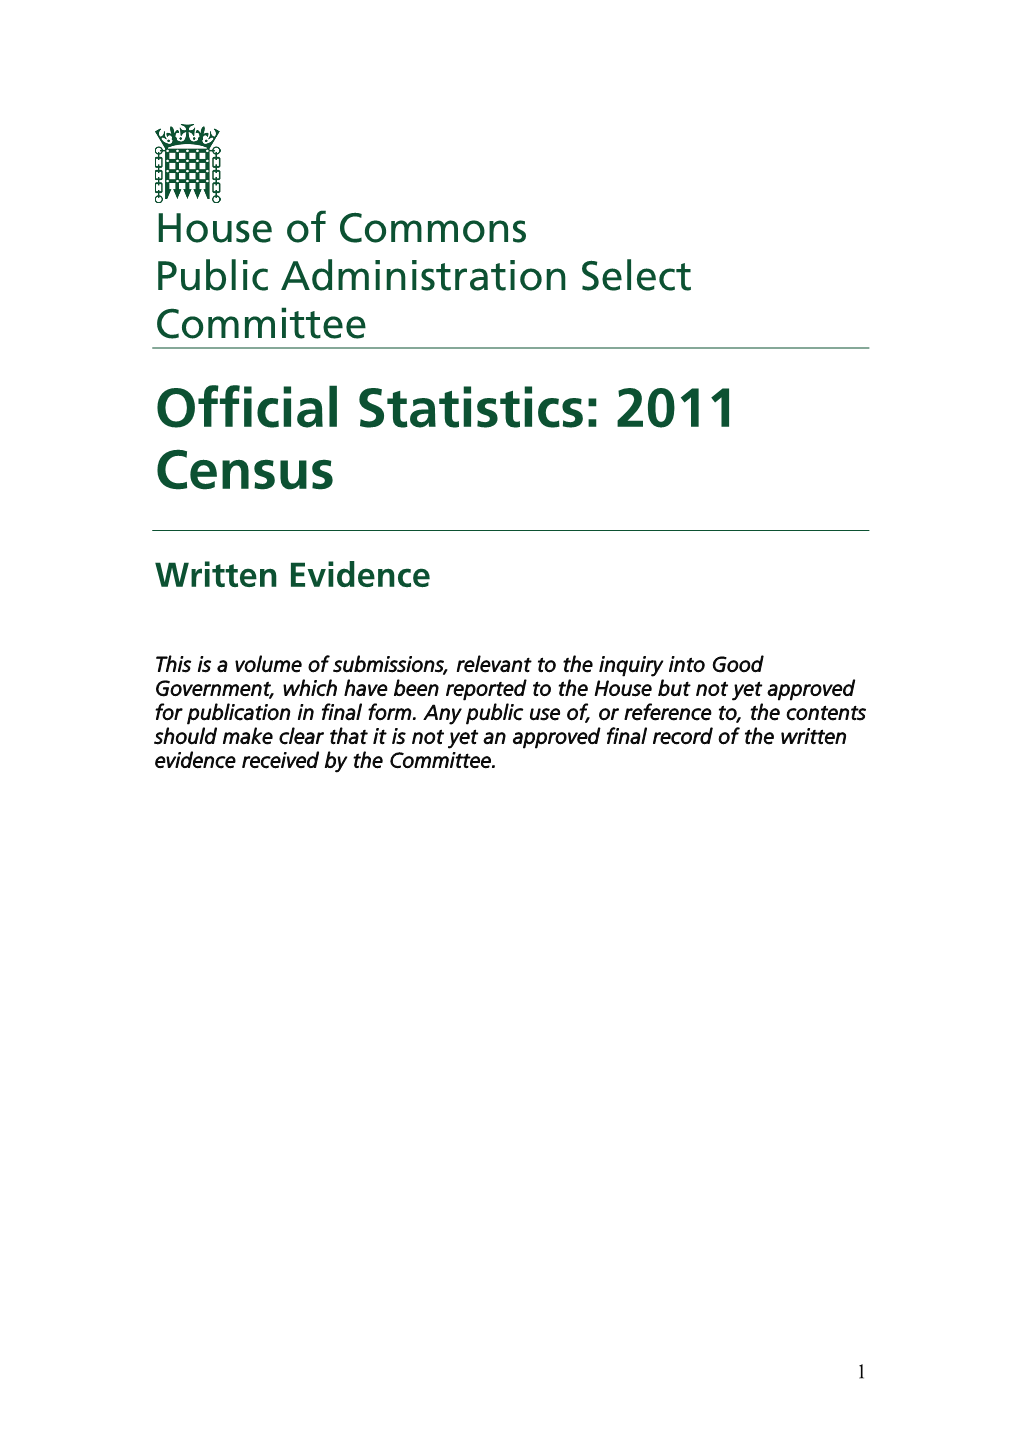 Official Statistics: 2011 Census